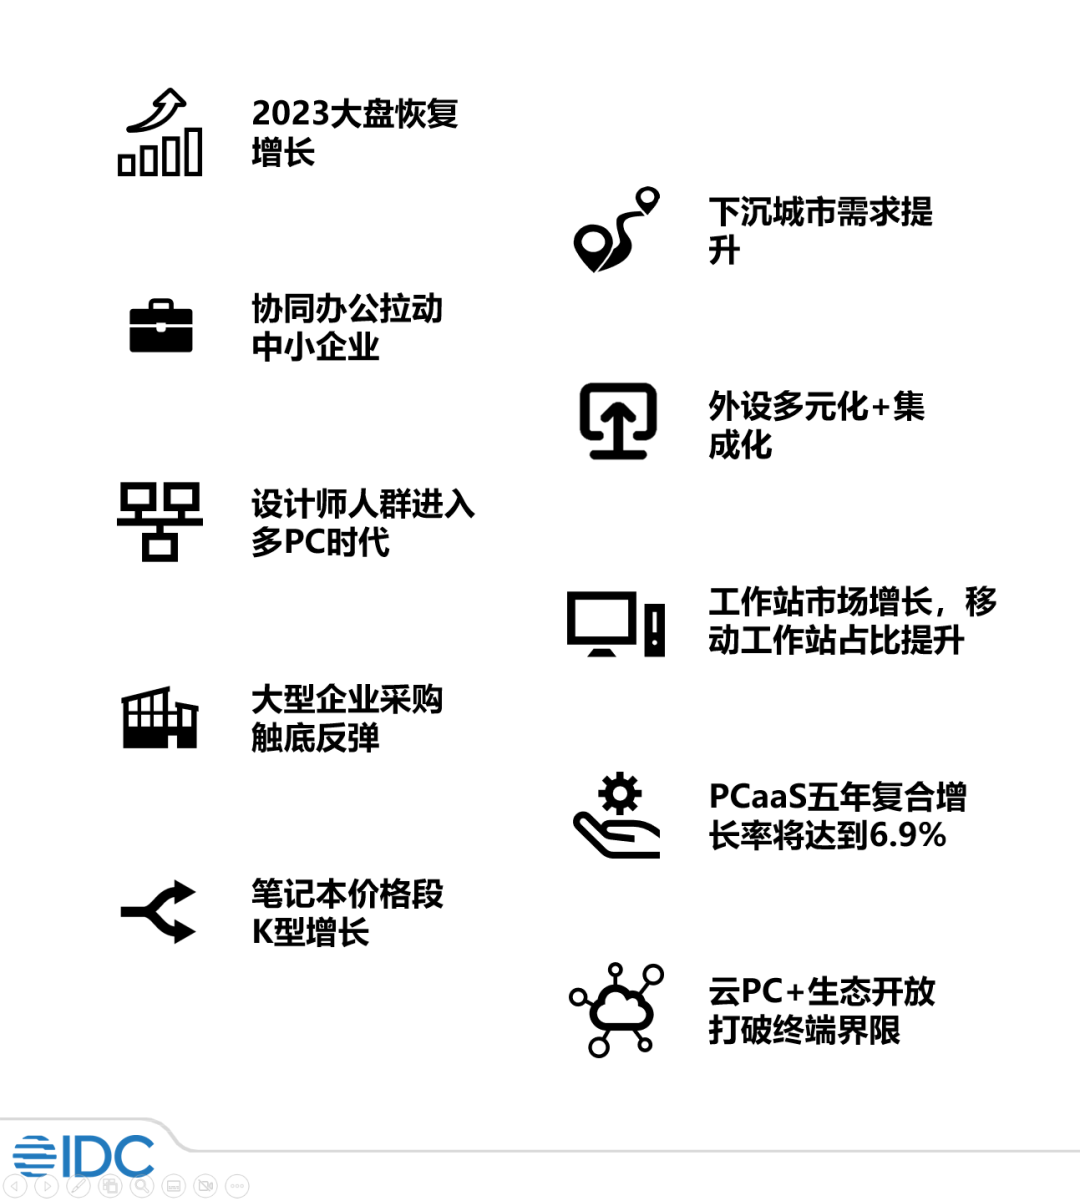 2023年中国PC市场十大洞察